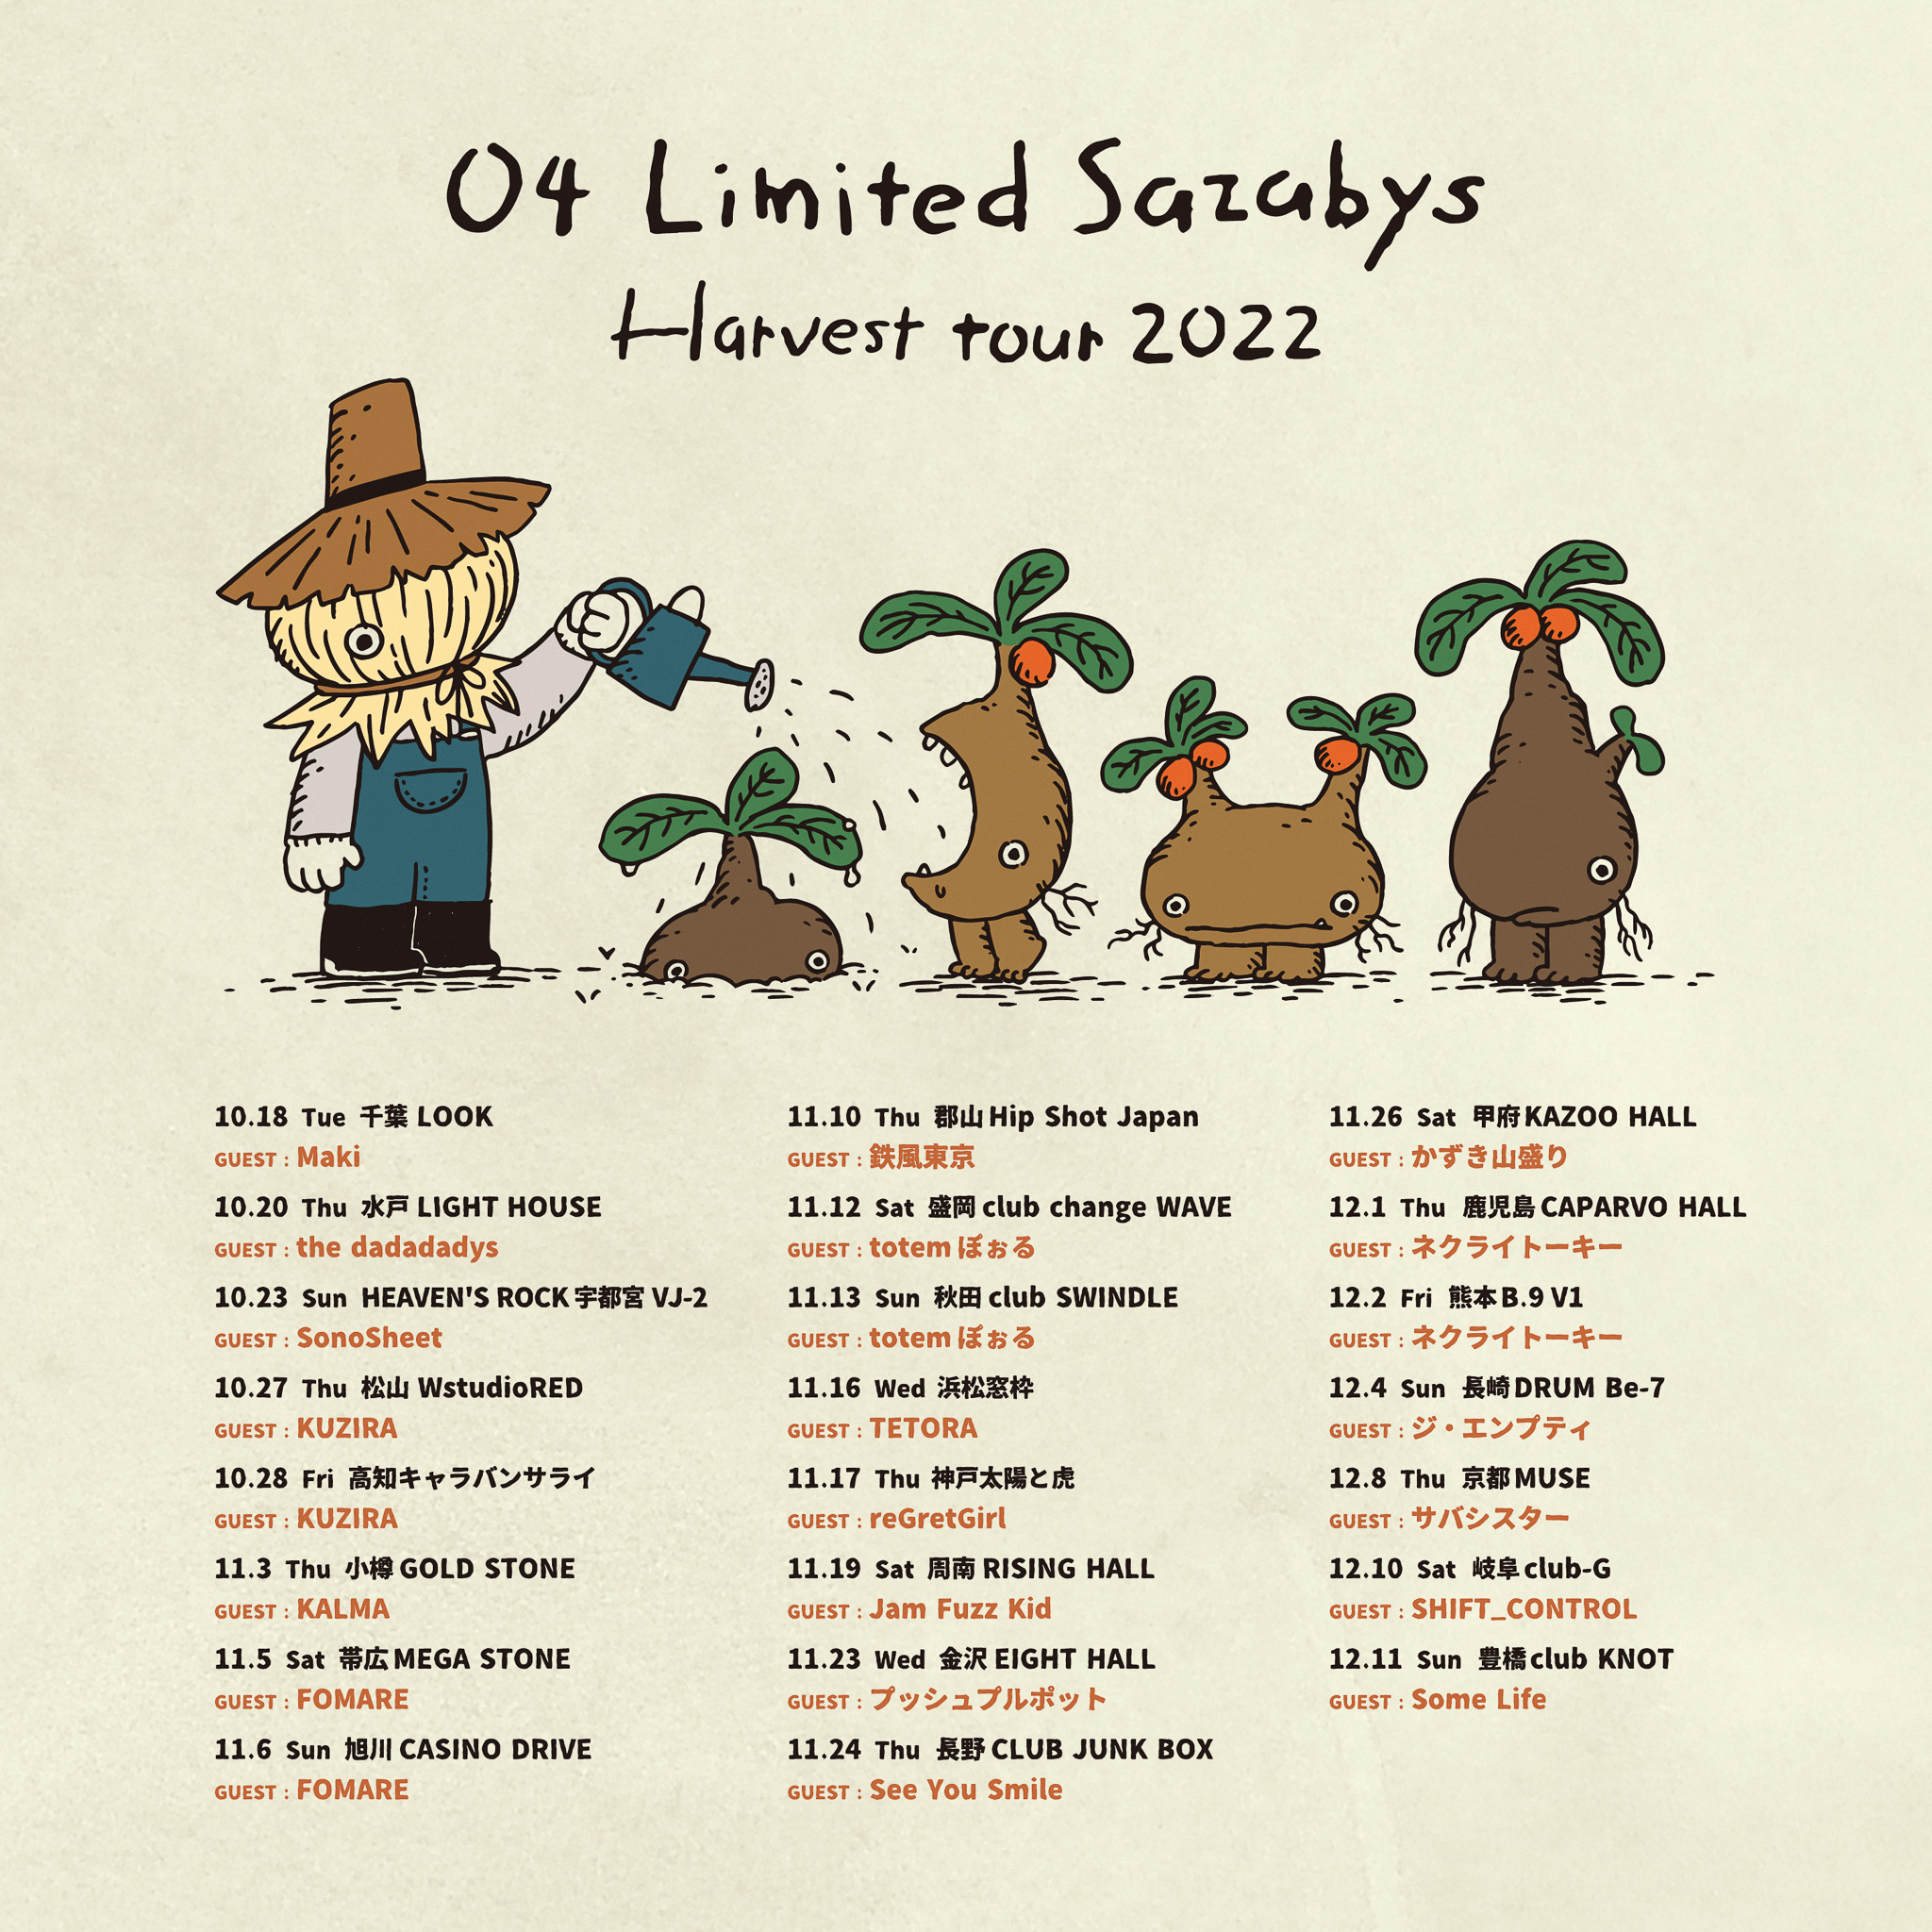 【高知】04 Limited Sazabys "Harvest tour 2022" (高知キャラバンサライ)